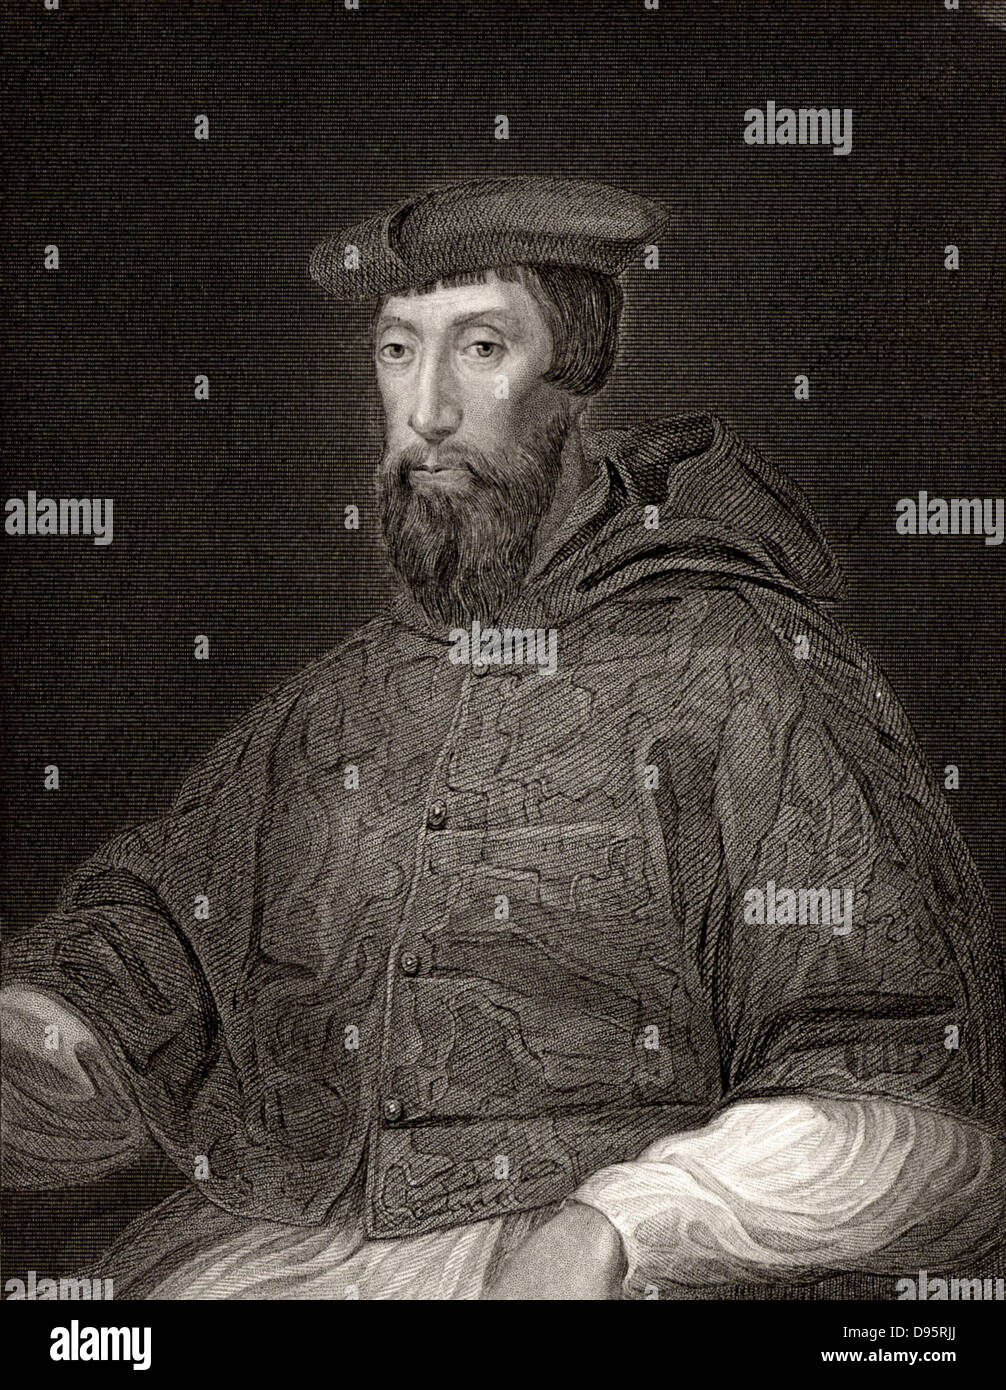 Il Cardinale Reginald Pole (1500-1558) inglese prelato. Arcivescovo di Canterbury. Protestanti perseguitati durante il regno di Maria I. incisione dopo il ritratto di Tiziano. Foto Stock